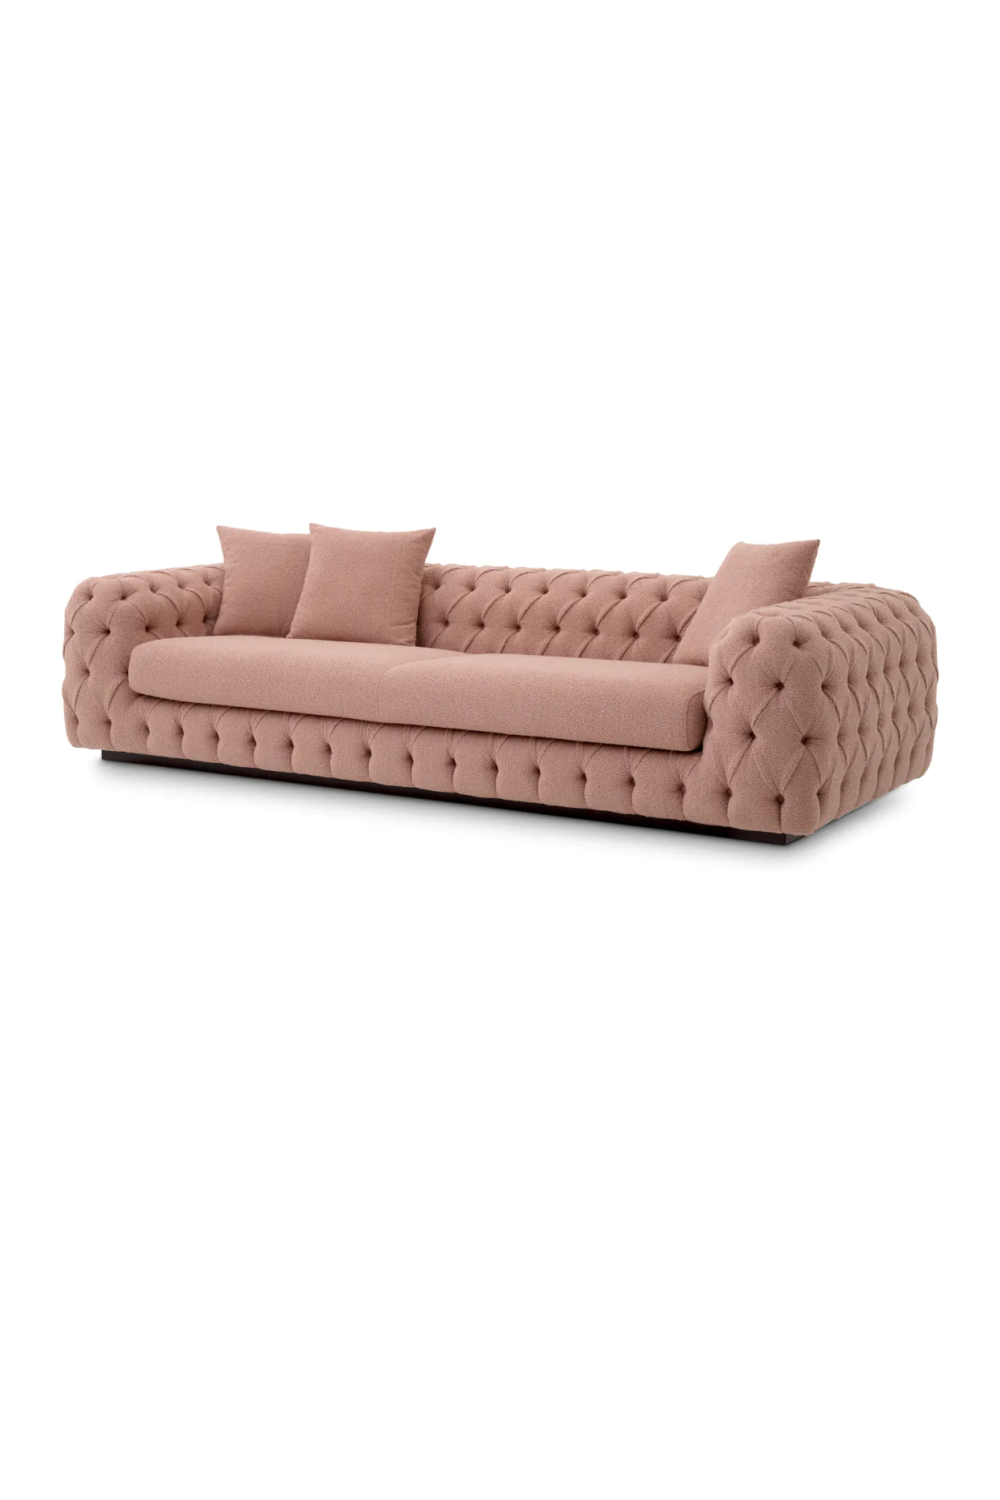 Vintage Pink Bouclé Sofa | Eichholtz Piccadilly | Oroa.com